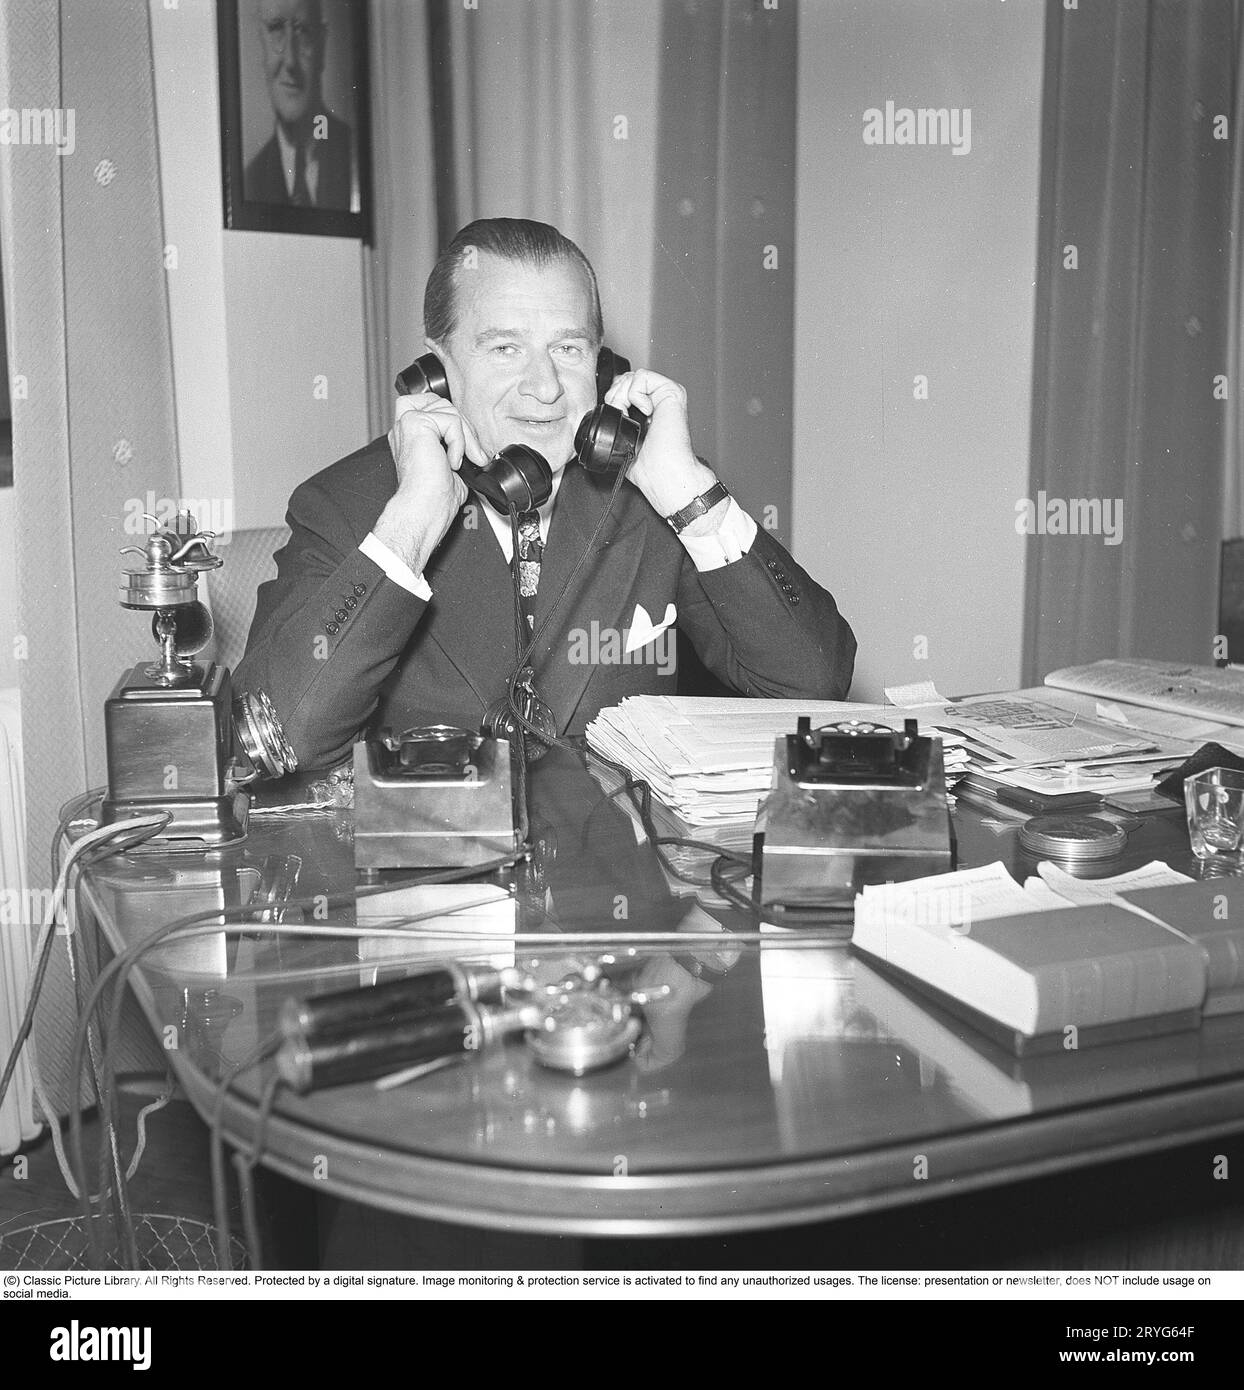 Dans les années 1940 Un homme dans un bureau avec deux téléphones semble occupé, parlant dans deux téléphones en même temps. Suède 1945. Kristoffersson réf. N12-4 Banque D'Images